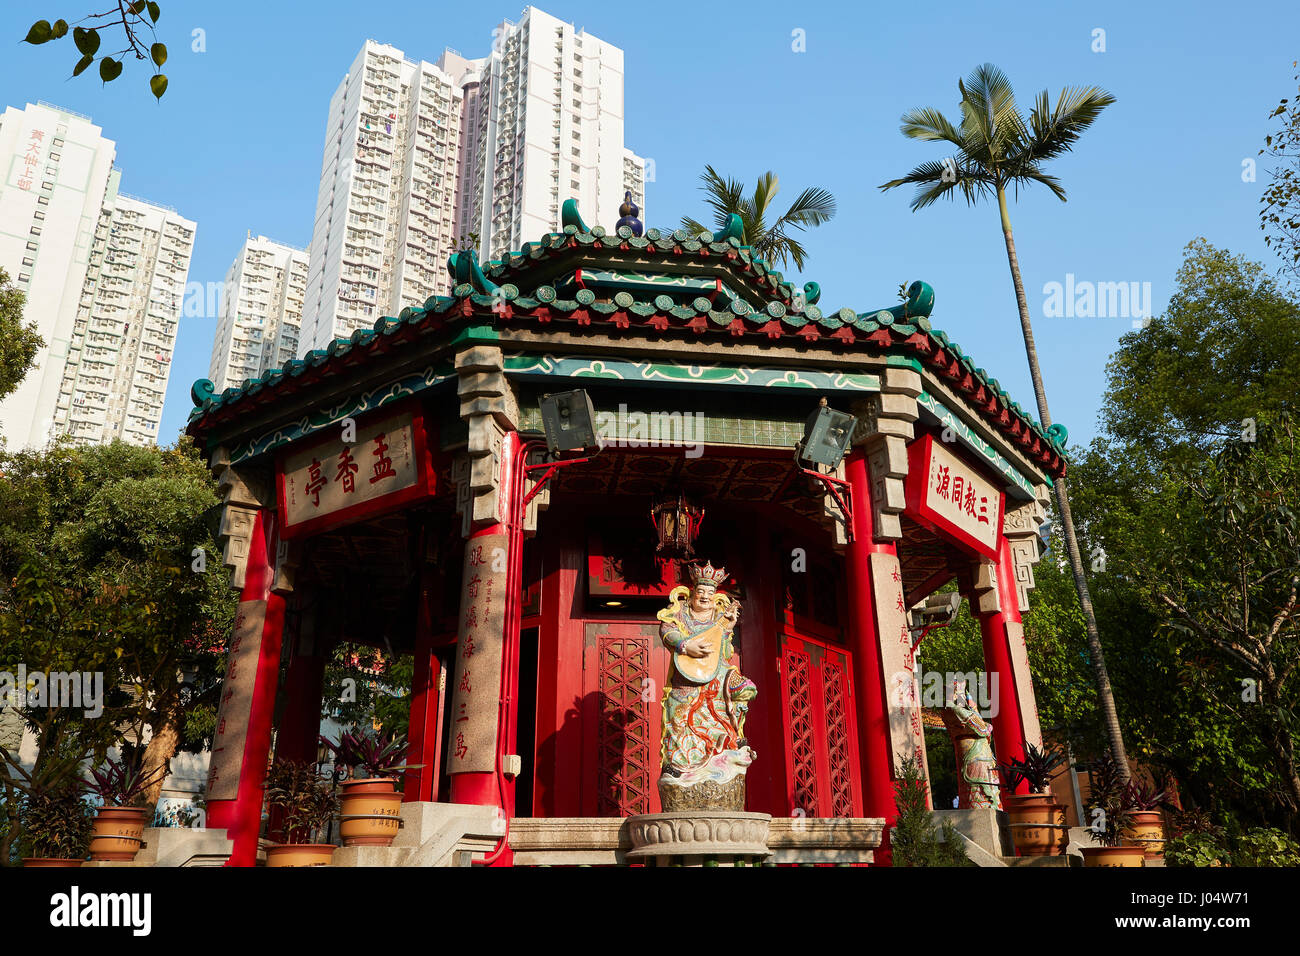 Ornate Detailed Traditional Chinese Pagoda At The Wong Tai Sin Temple, Hong Kong. Stock Photo